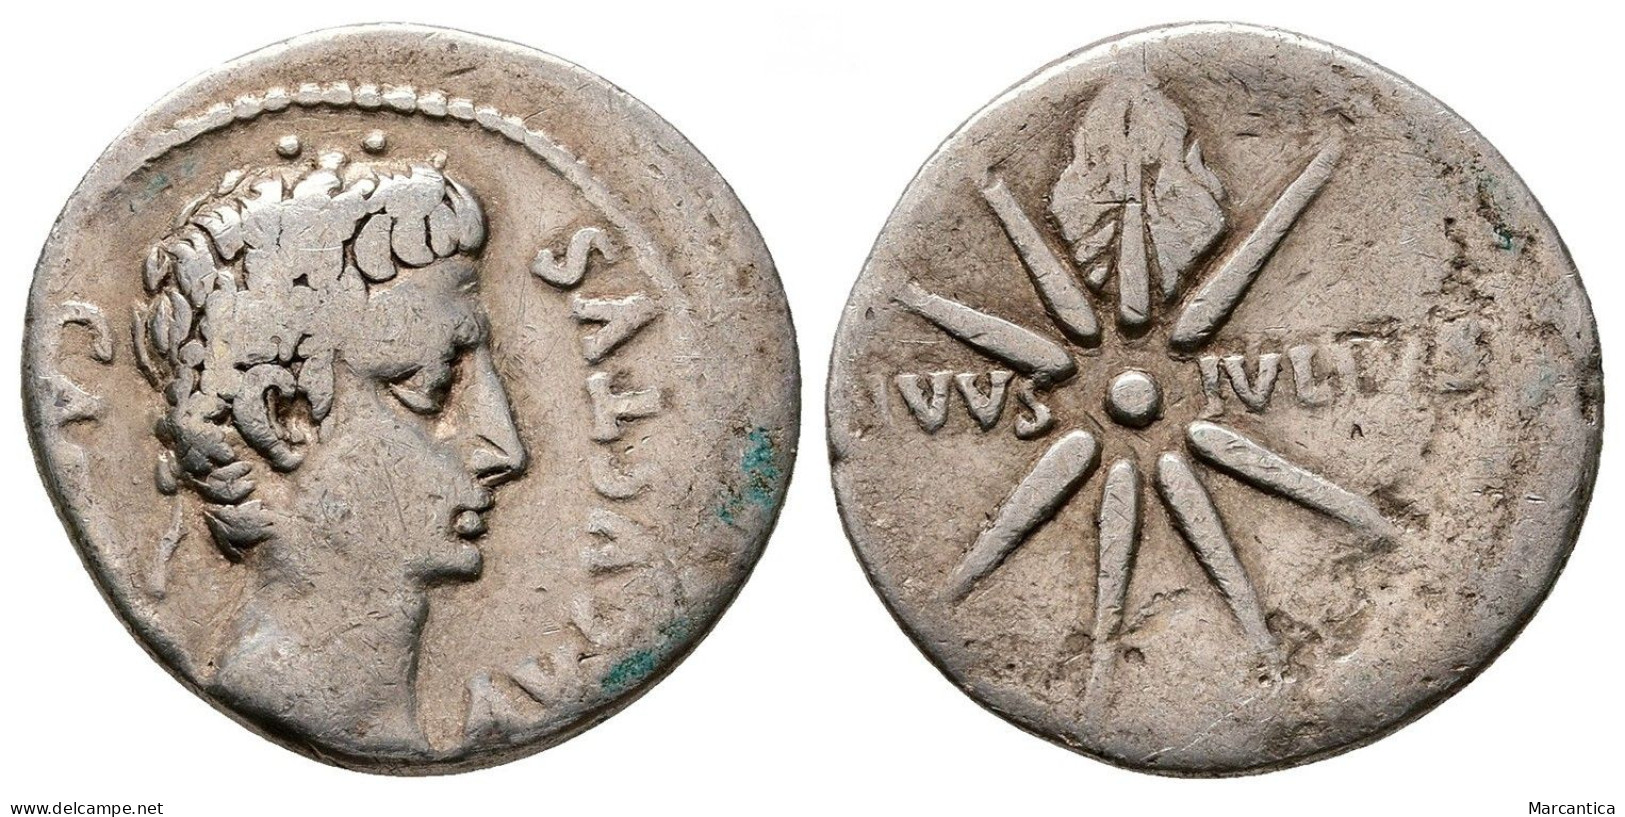 Augustus (27 BC-AD 14). AR Denarius (20 Mm, 3.25 G). Spain, Caesaraugusta (?), 19-18 BC. - The Julio-Claudians (27 BC To 69 AD)